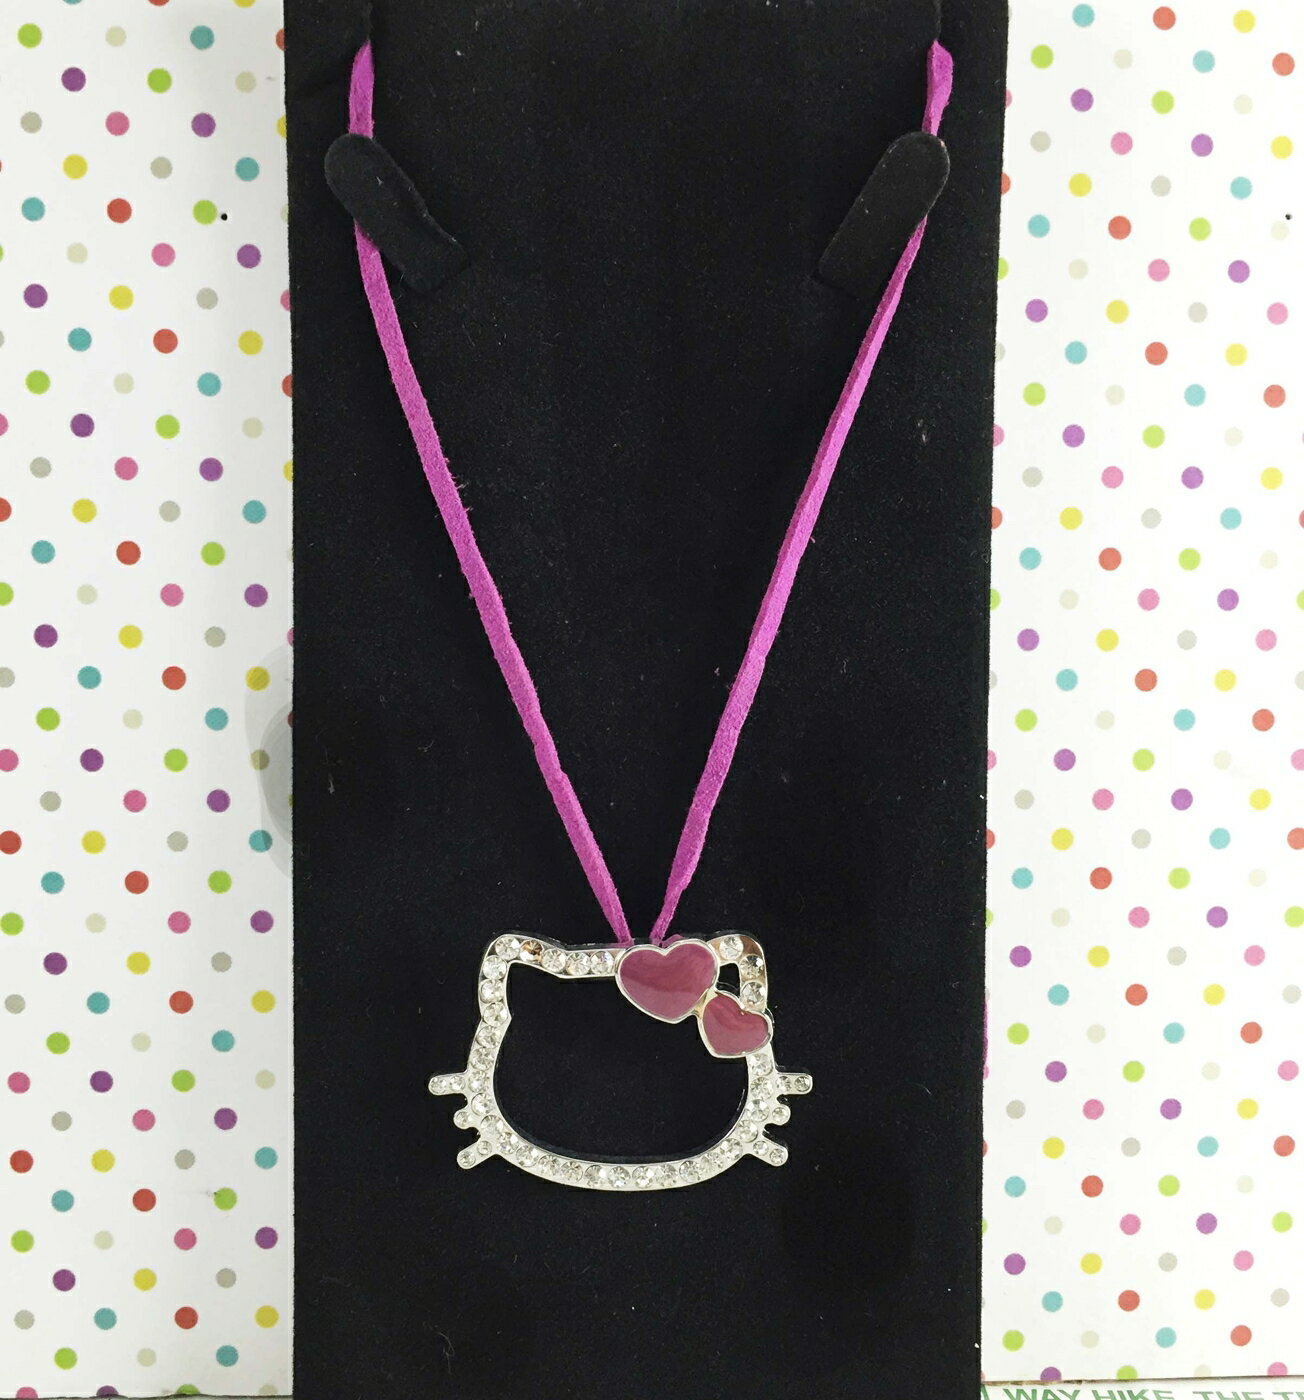 【震撼精品百貨】Hello Kitty 凱蒂貓 造型項鍊-深紫 震撼日式精品百貨